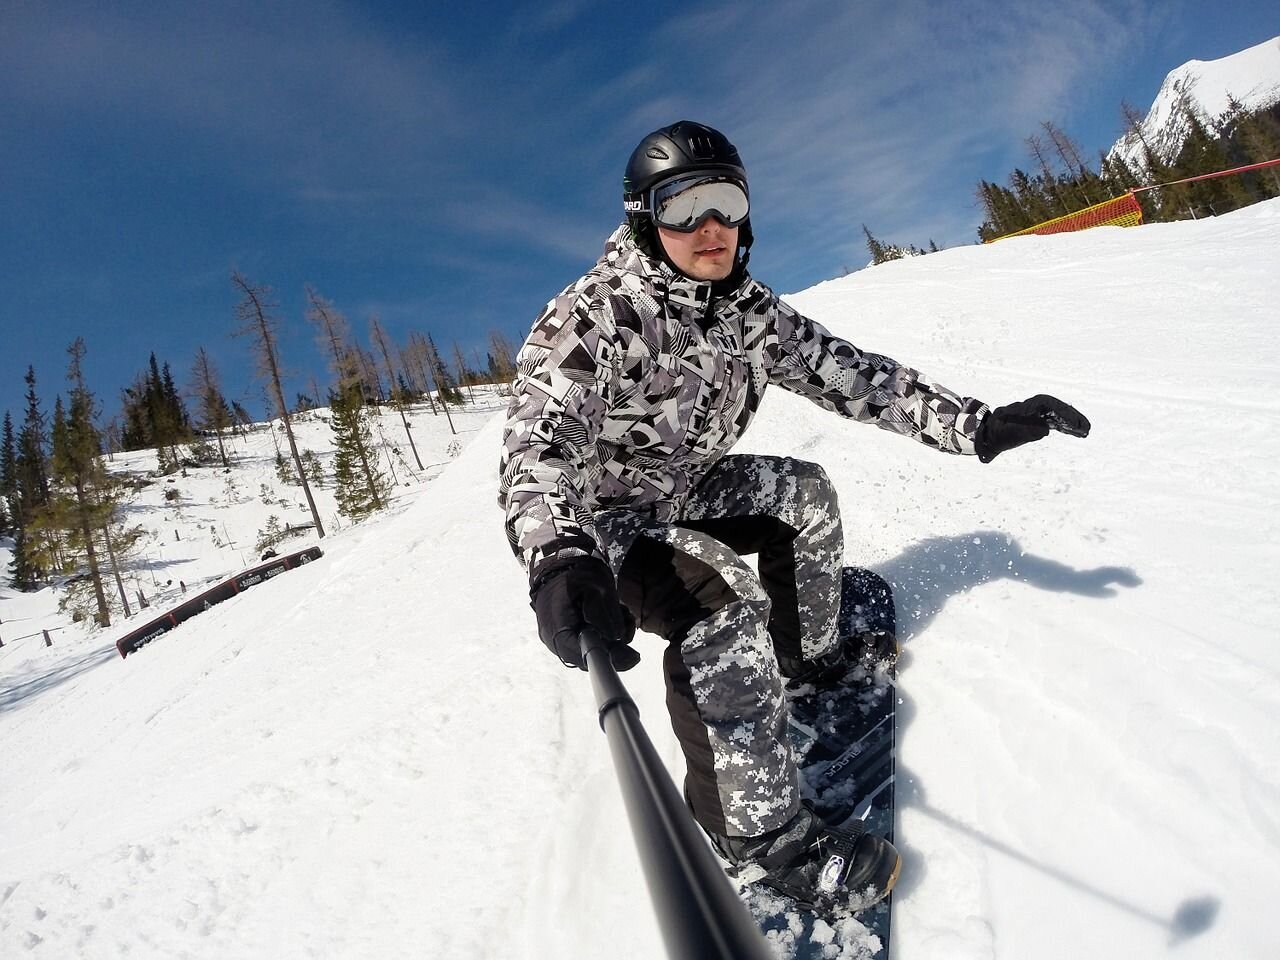 Jakie wyposażenie powinno się nabyć, chcąc jeździć na snowboardzie?